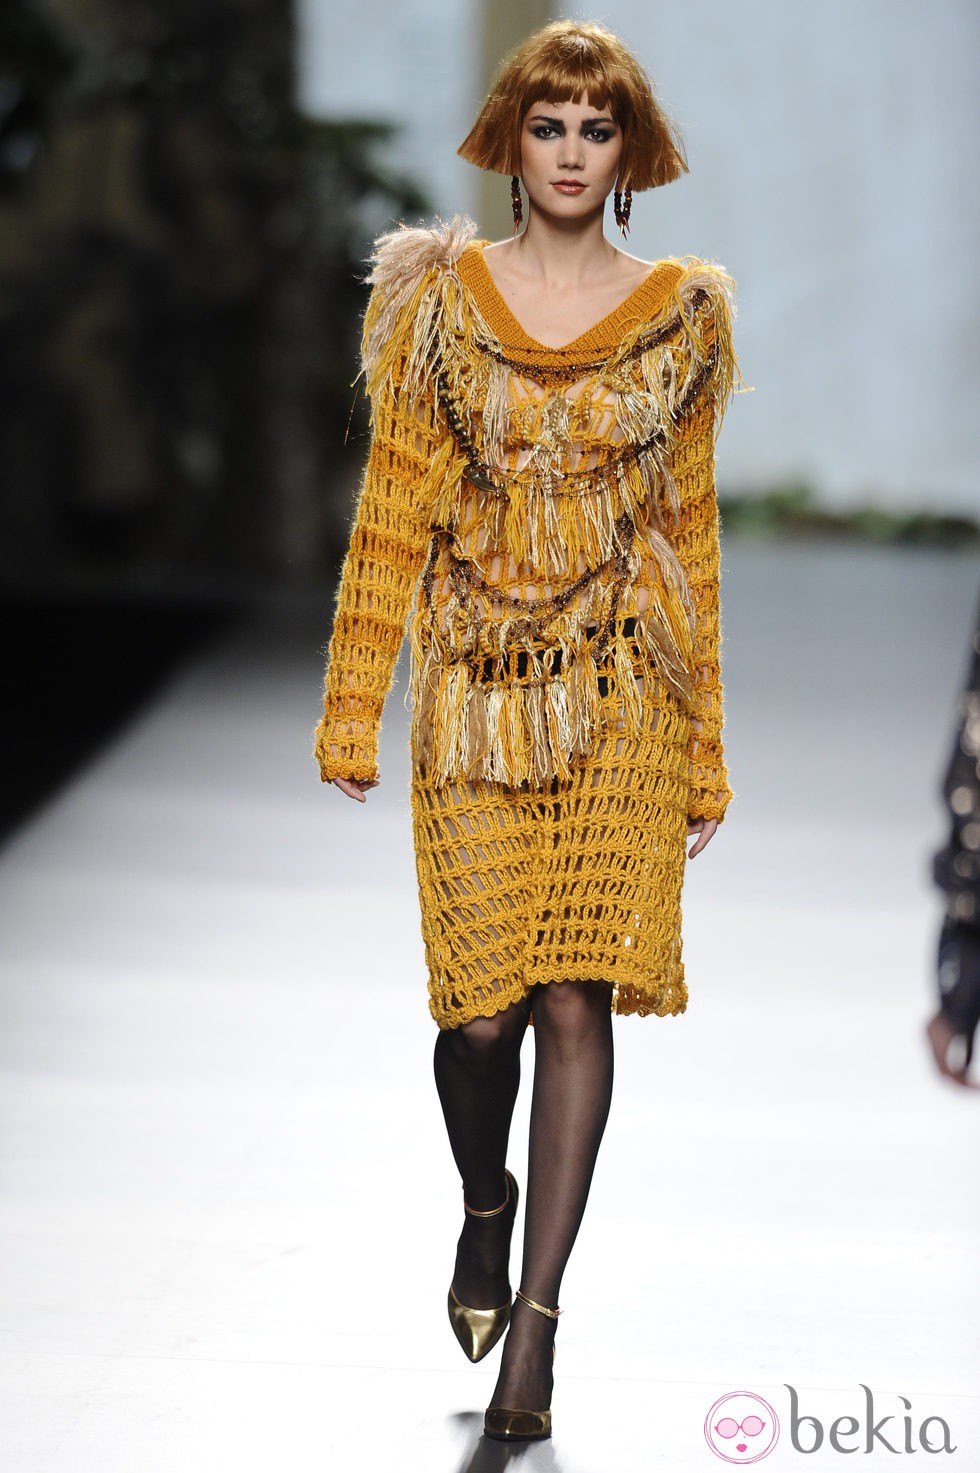 Vestido color mostaza en la colección otoño/invierno 2013/2014 de Francis Montesinos en la Madrid Fashion Week